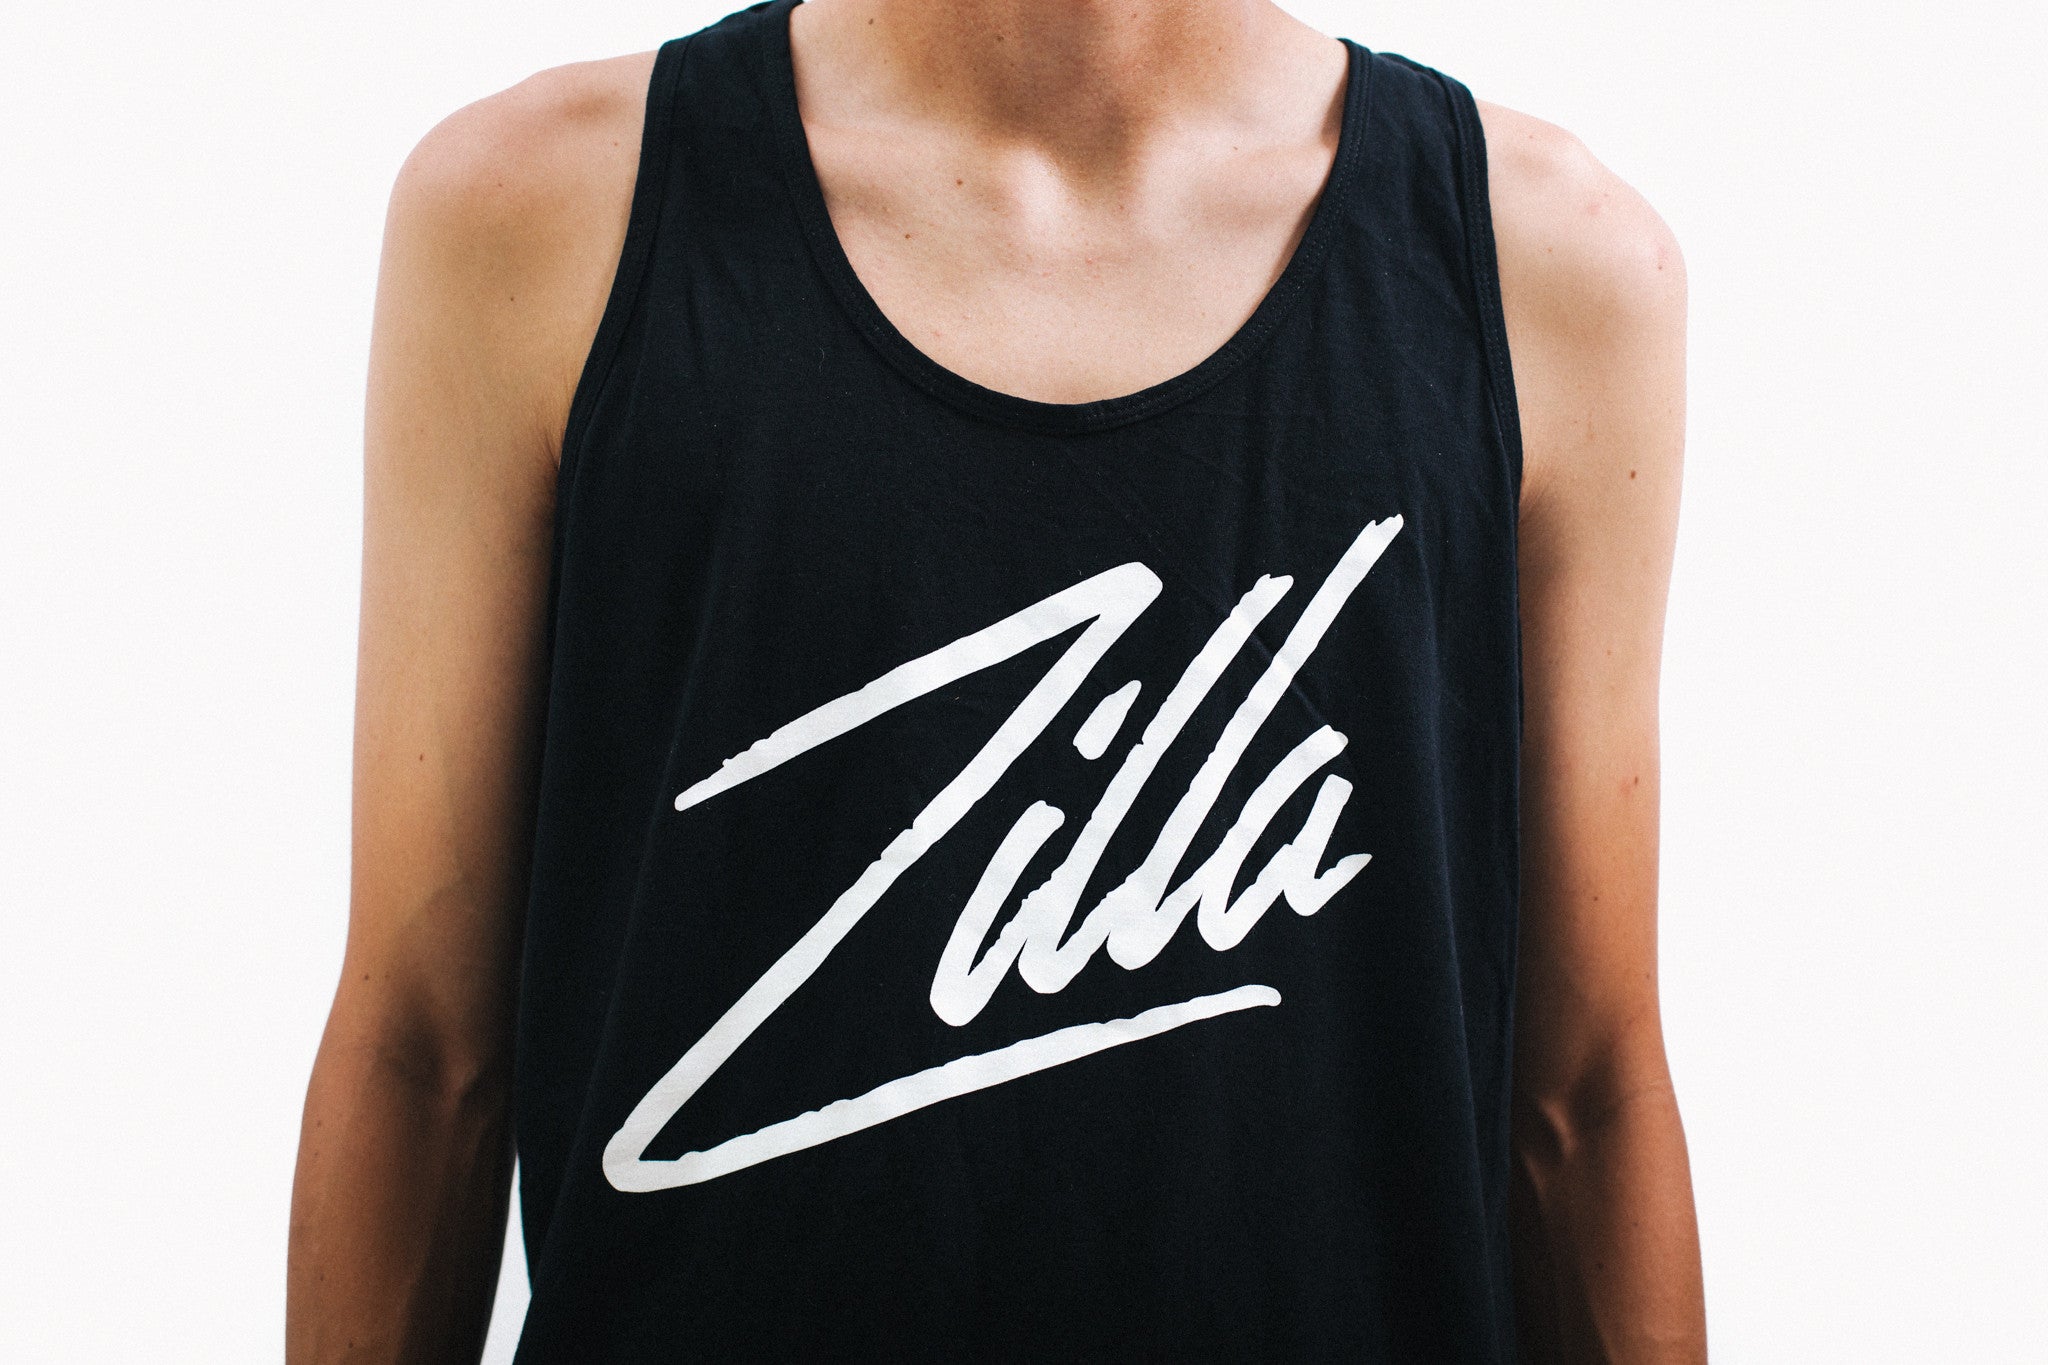 Zilla Tank (Black)